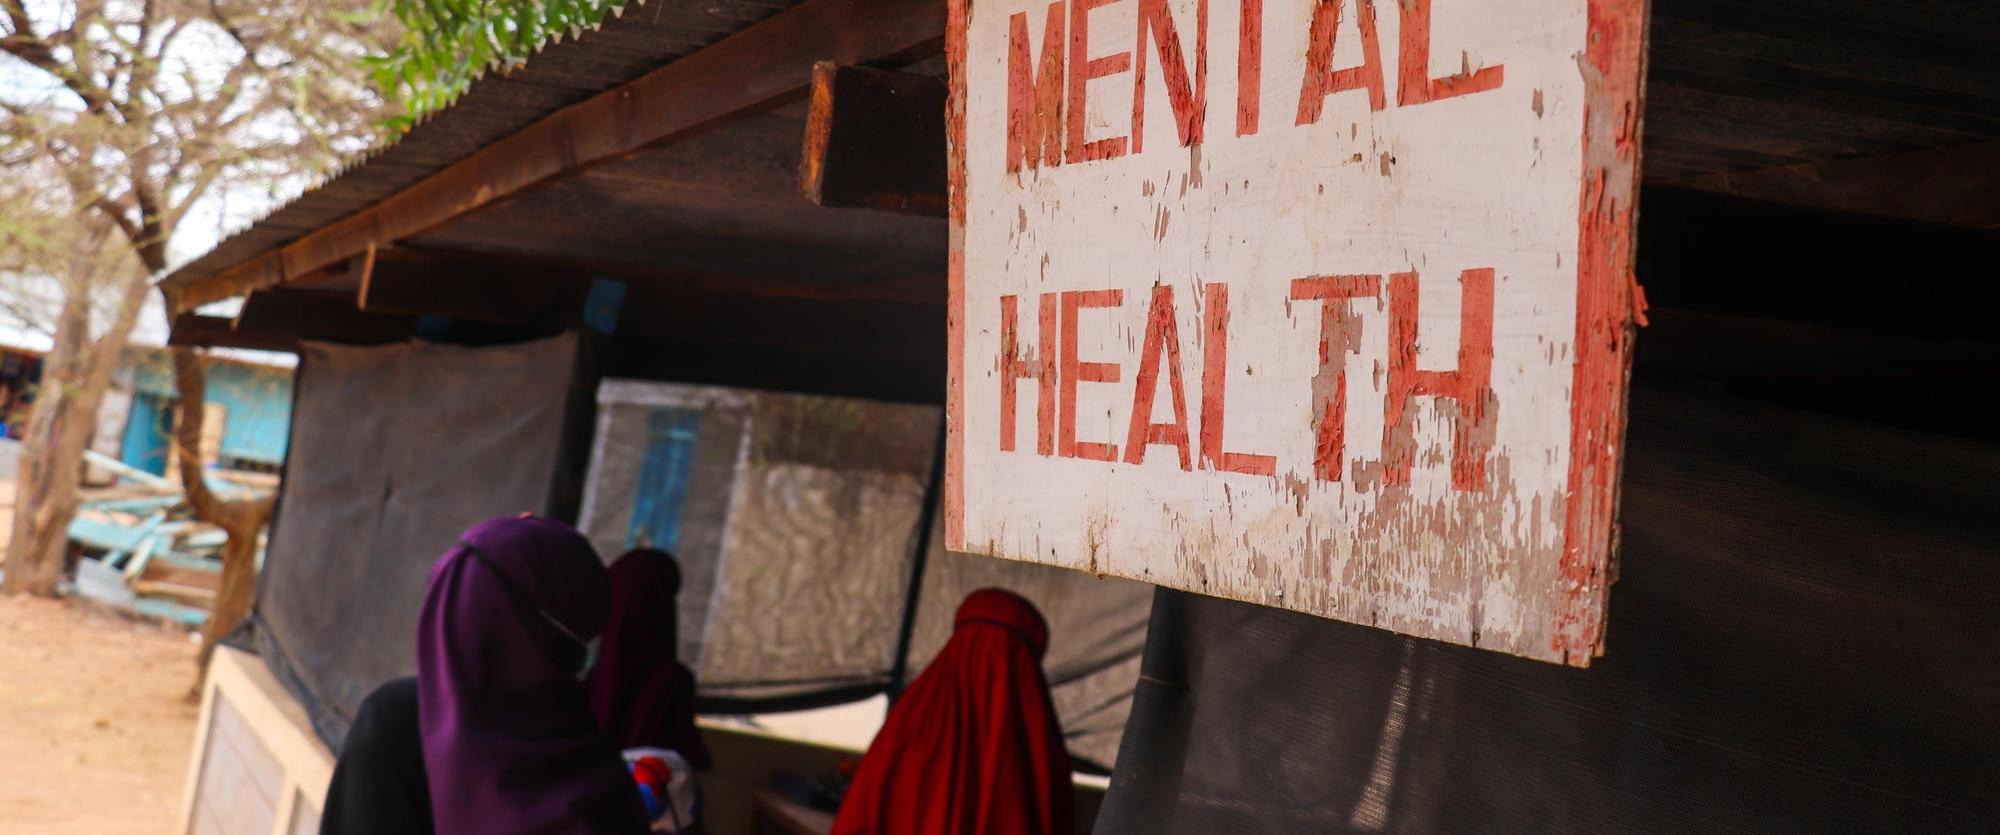 Entrée de la clinique MSF pour les soins de santé mentale, dans le camp de Dagahaley, Dadaab, Kenya.